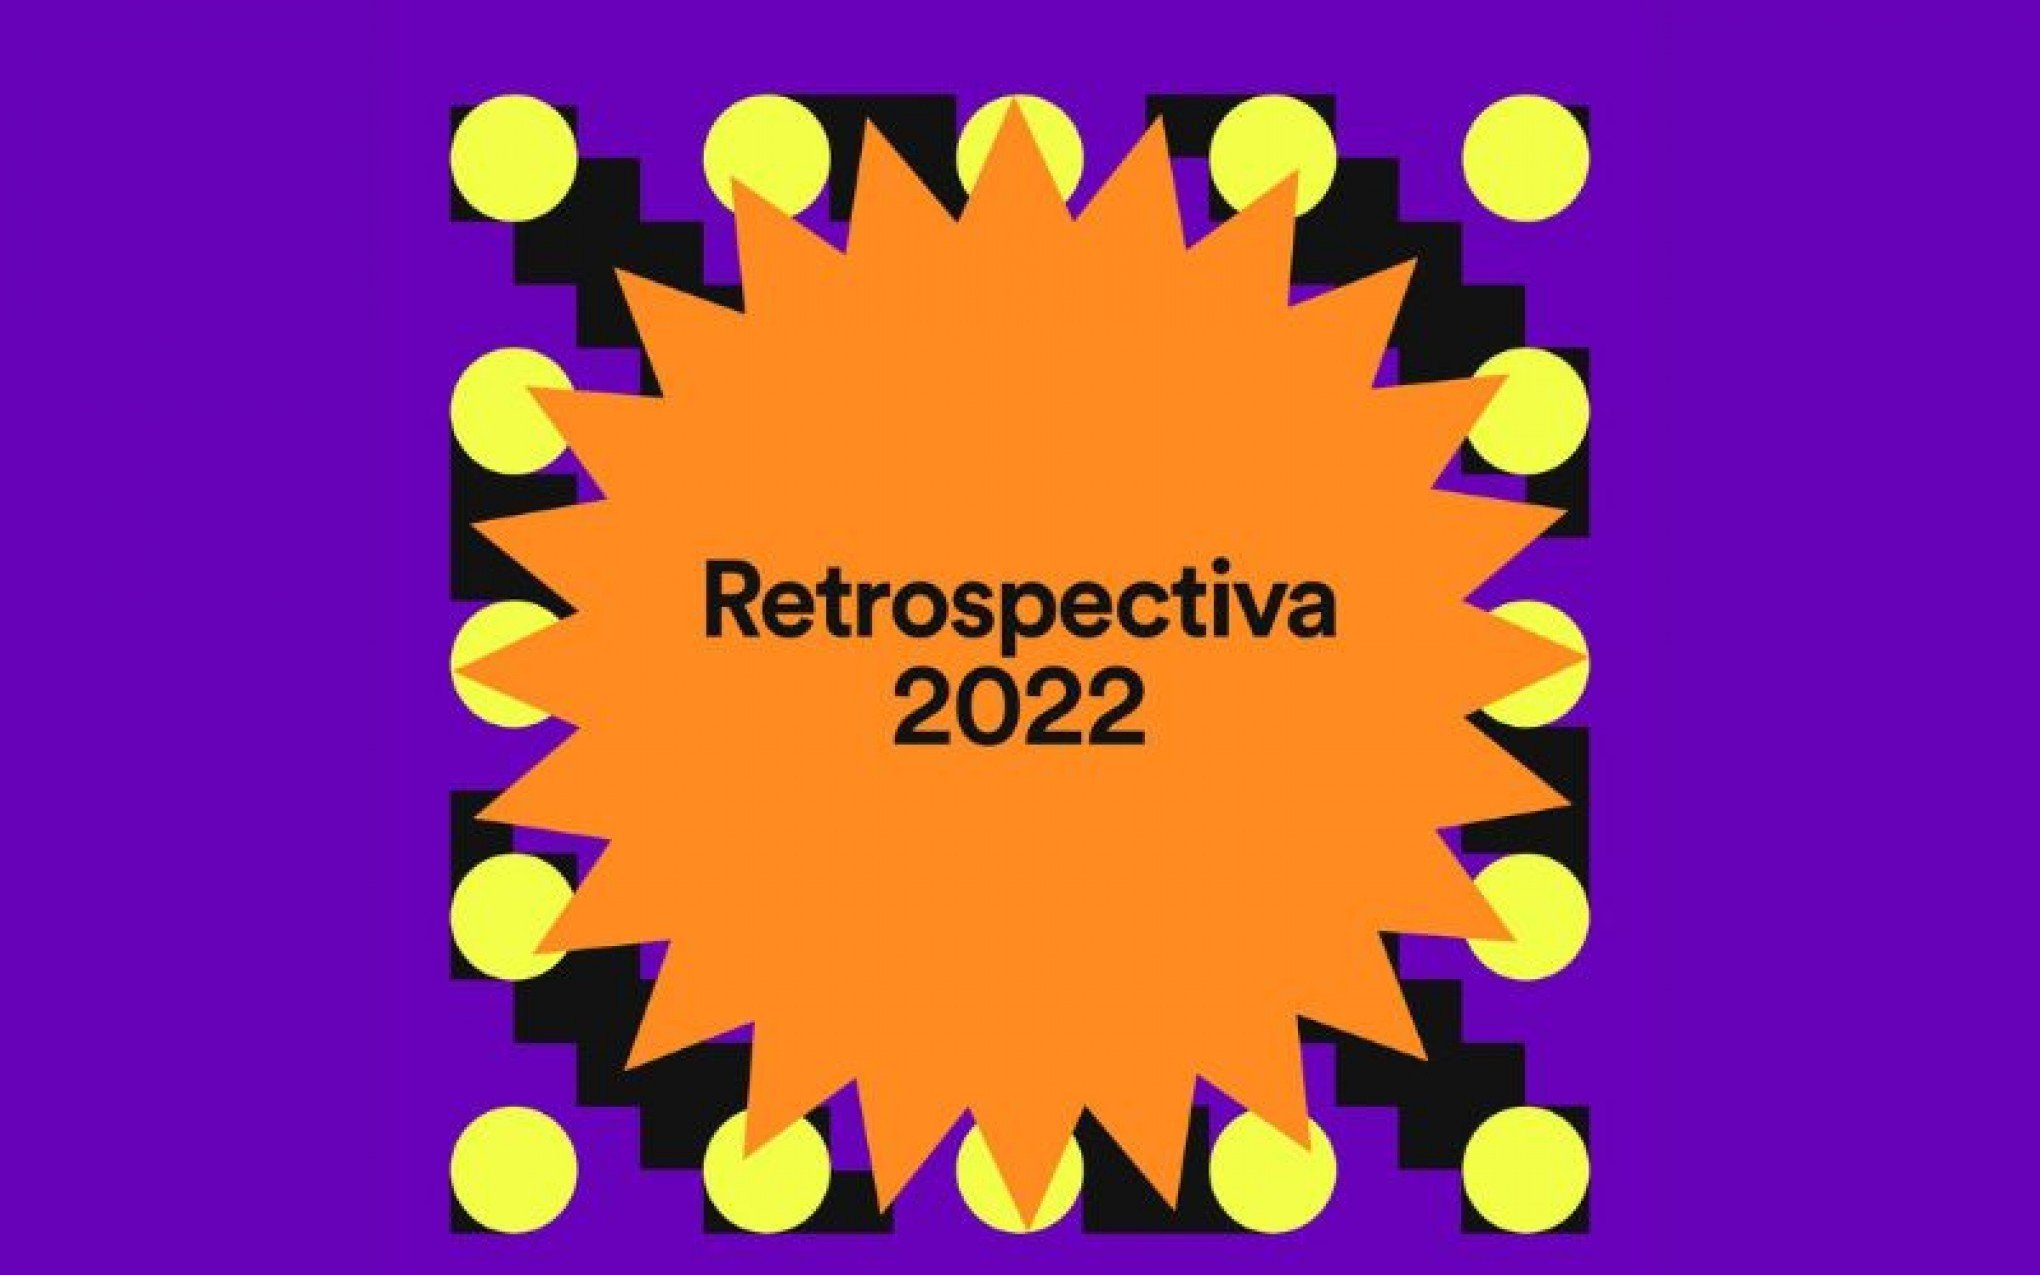 Saiba como descobrir a sua Retrospectiva Spotify 2022 - Entretenimento -  Correio de Gravataí